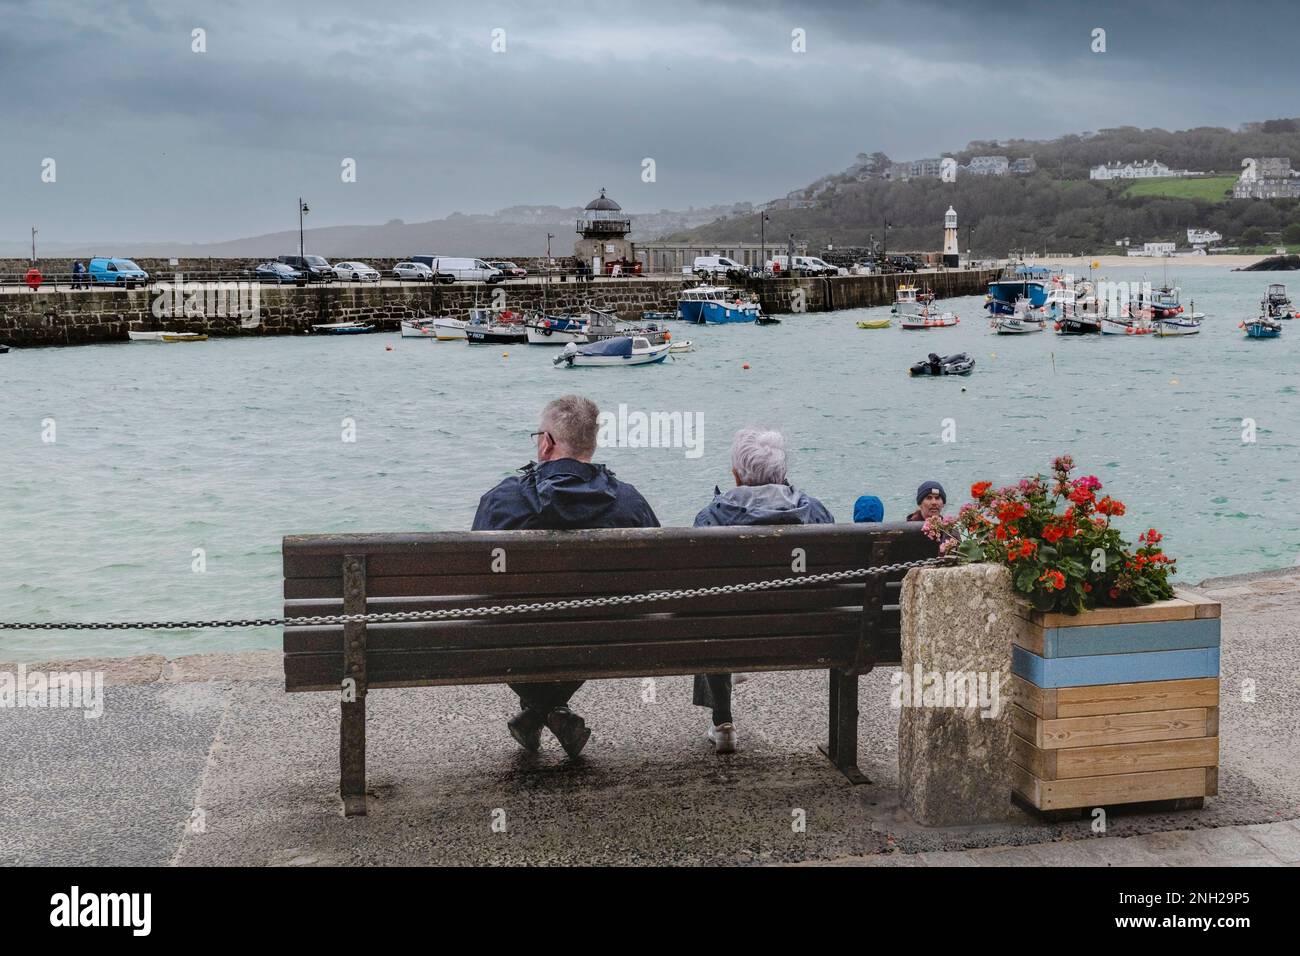 Meteo nel Regno Unito. I visitatori seduti su una panchina in una giornata piovosa e fredda nella storica cittadina costiera di St Ives, in Cornovaglia, in Inghilterra, nel Regno Unito. Foto Stock